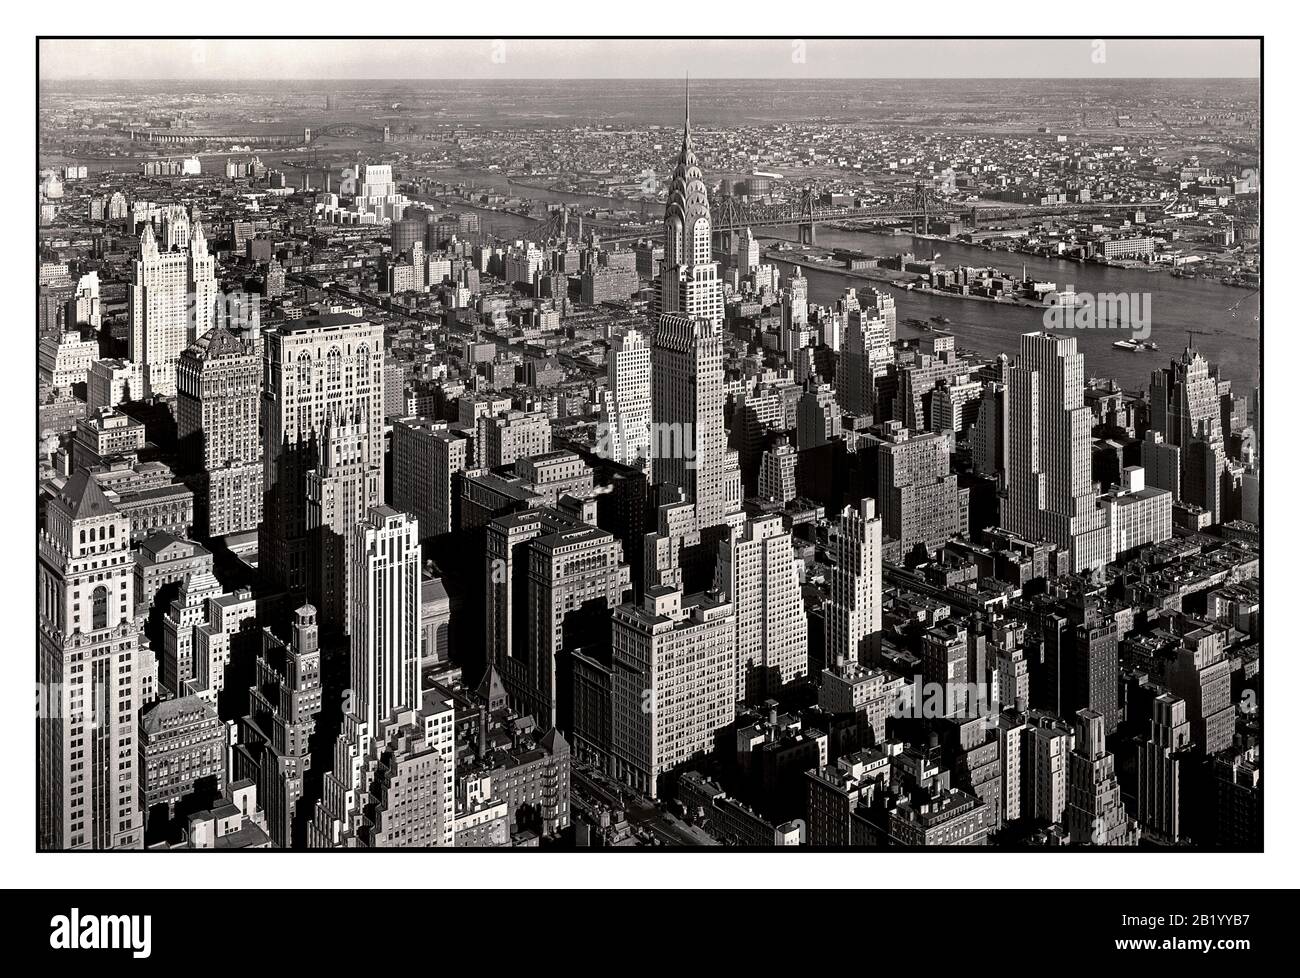 MANHATTAN WOLKENKRATZER Vintage 1932 Luftbild des Chrysler Gebäude dominiert Midtown Manhattan Wolkenkratzer Gebäude New York City NY USA Stockfoto